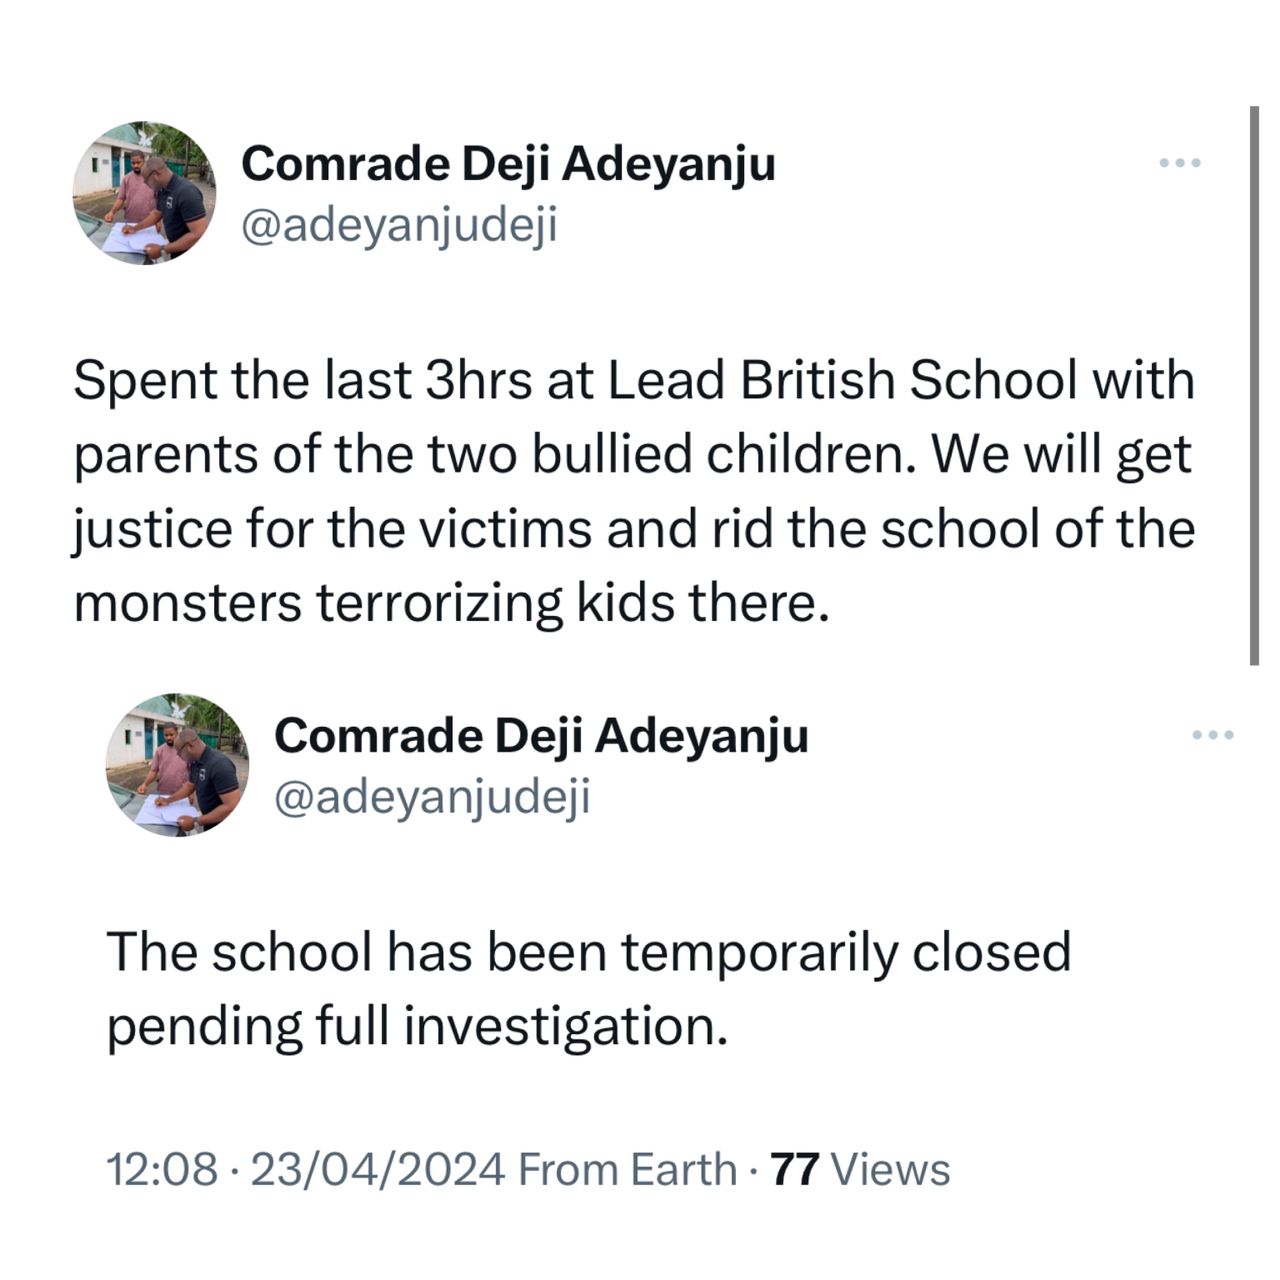 Bullying: Lead British School temporarily shut down - Deji Adeyanju